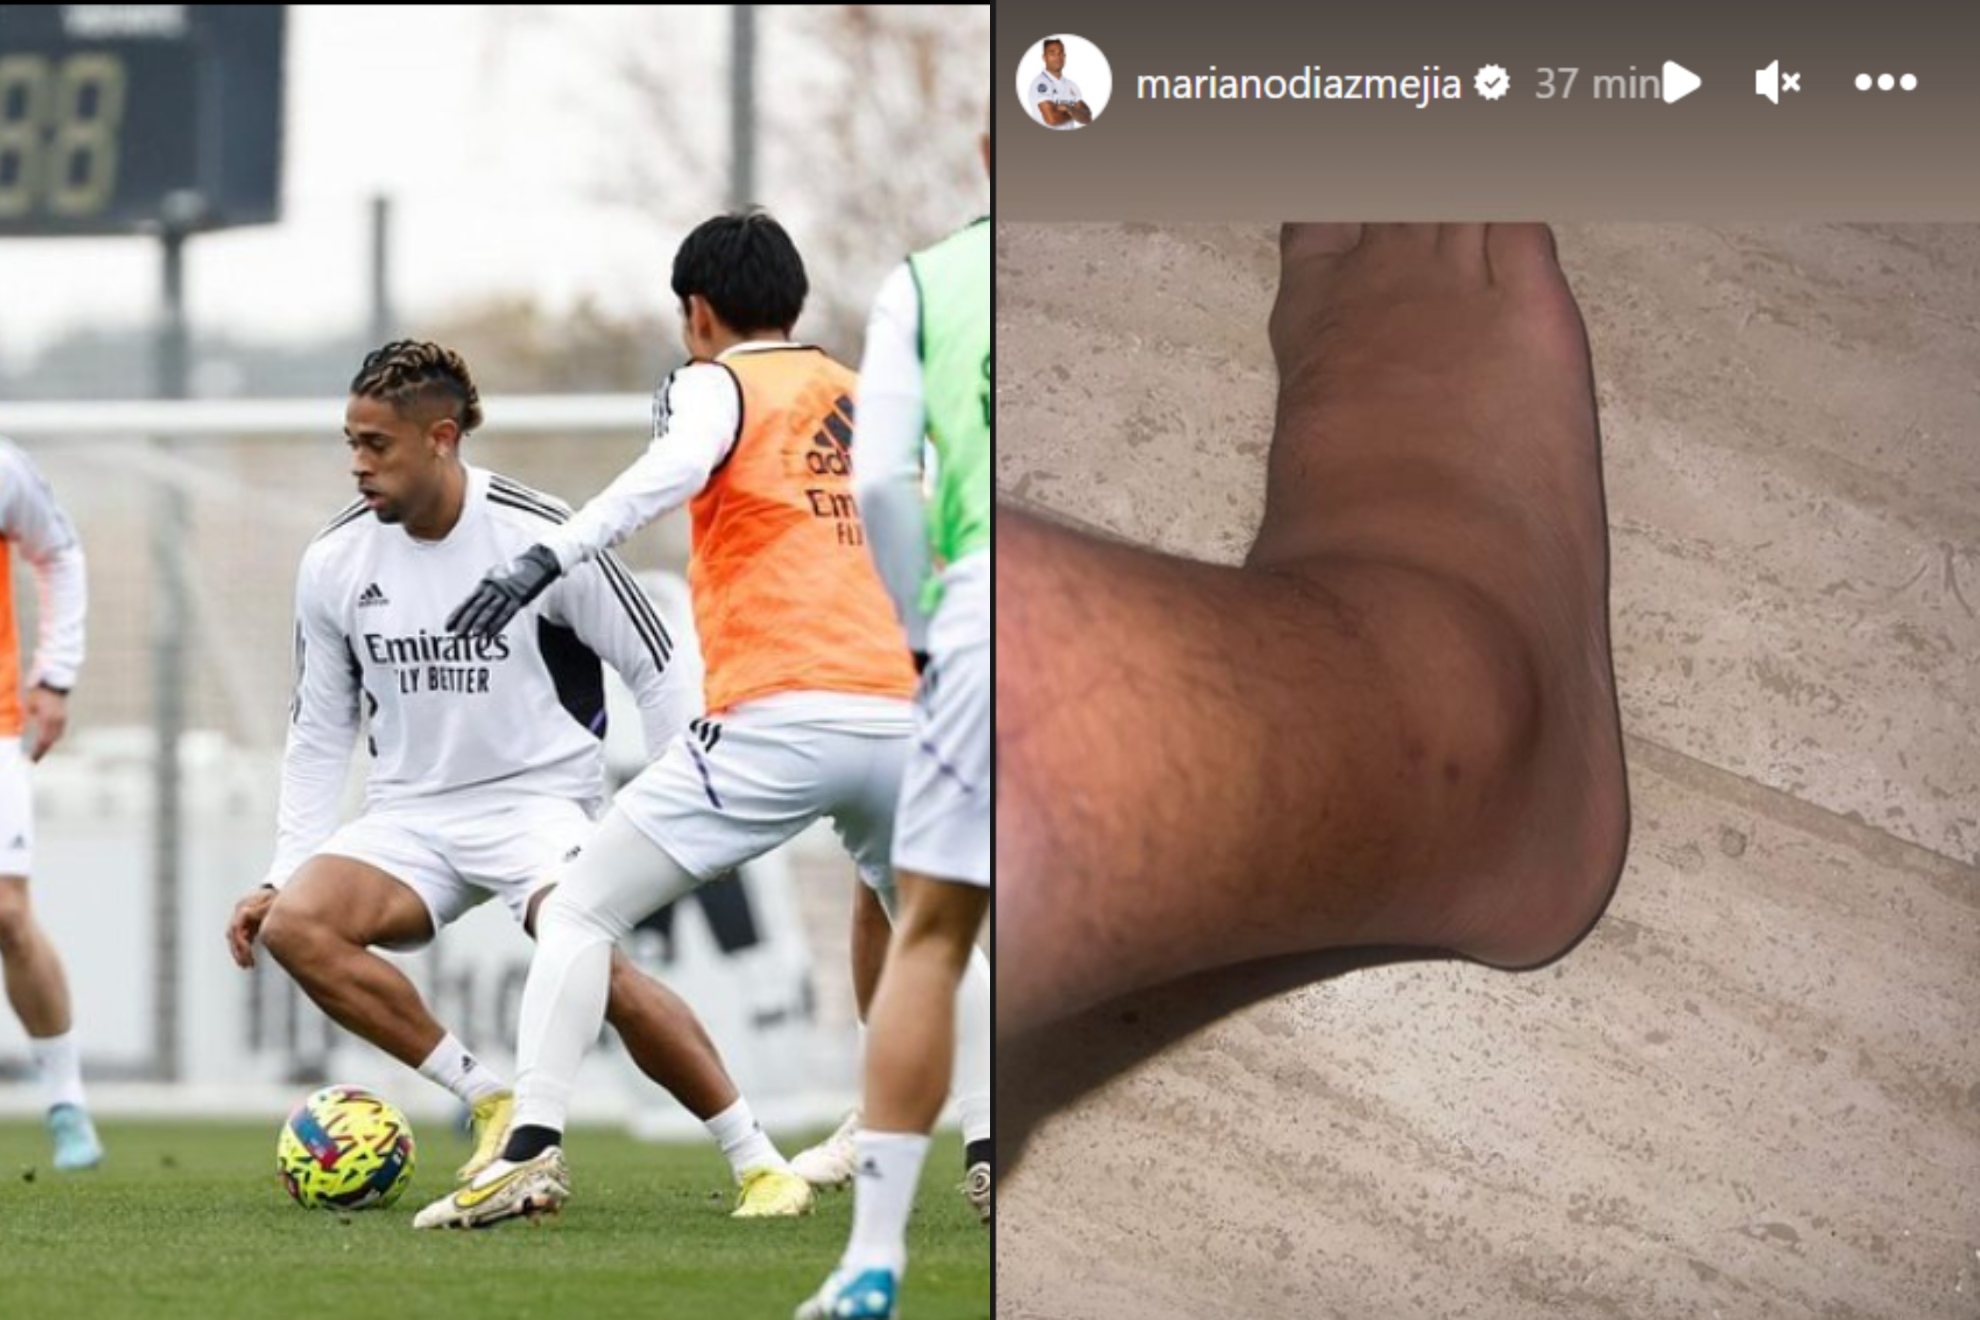 Mariano ha subido a su cuenta de Instagram una foto con su tobillo derecho hinchado.